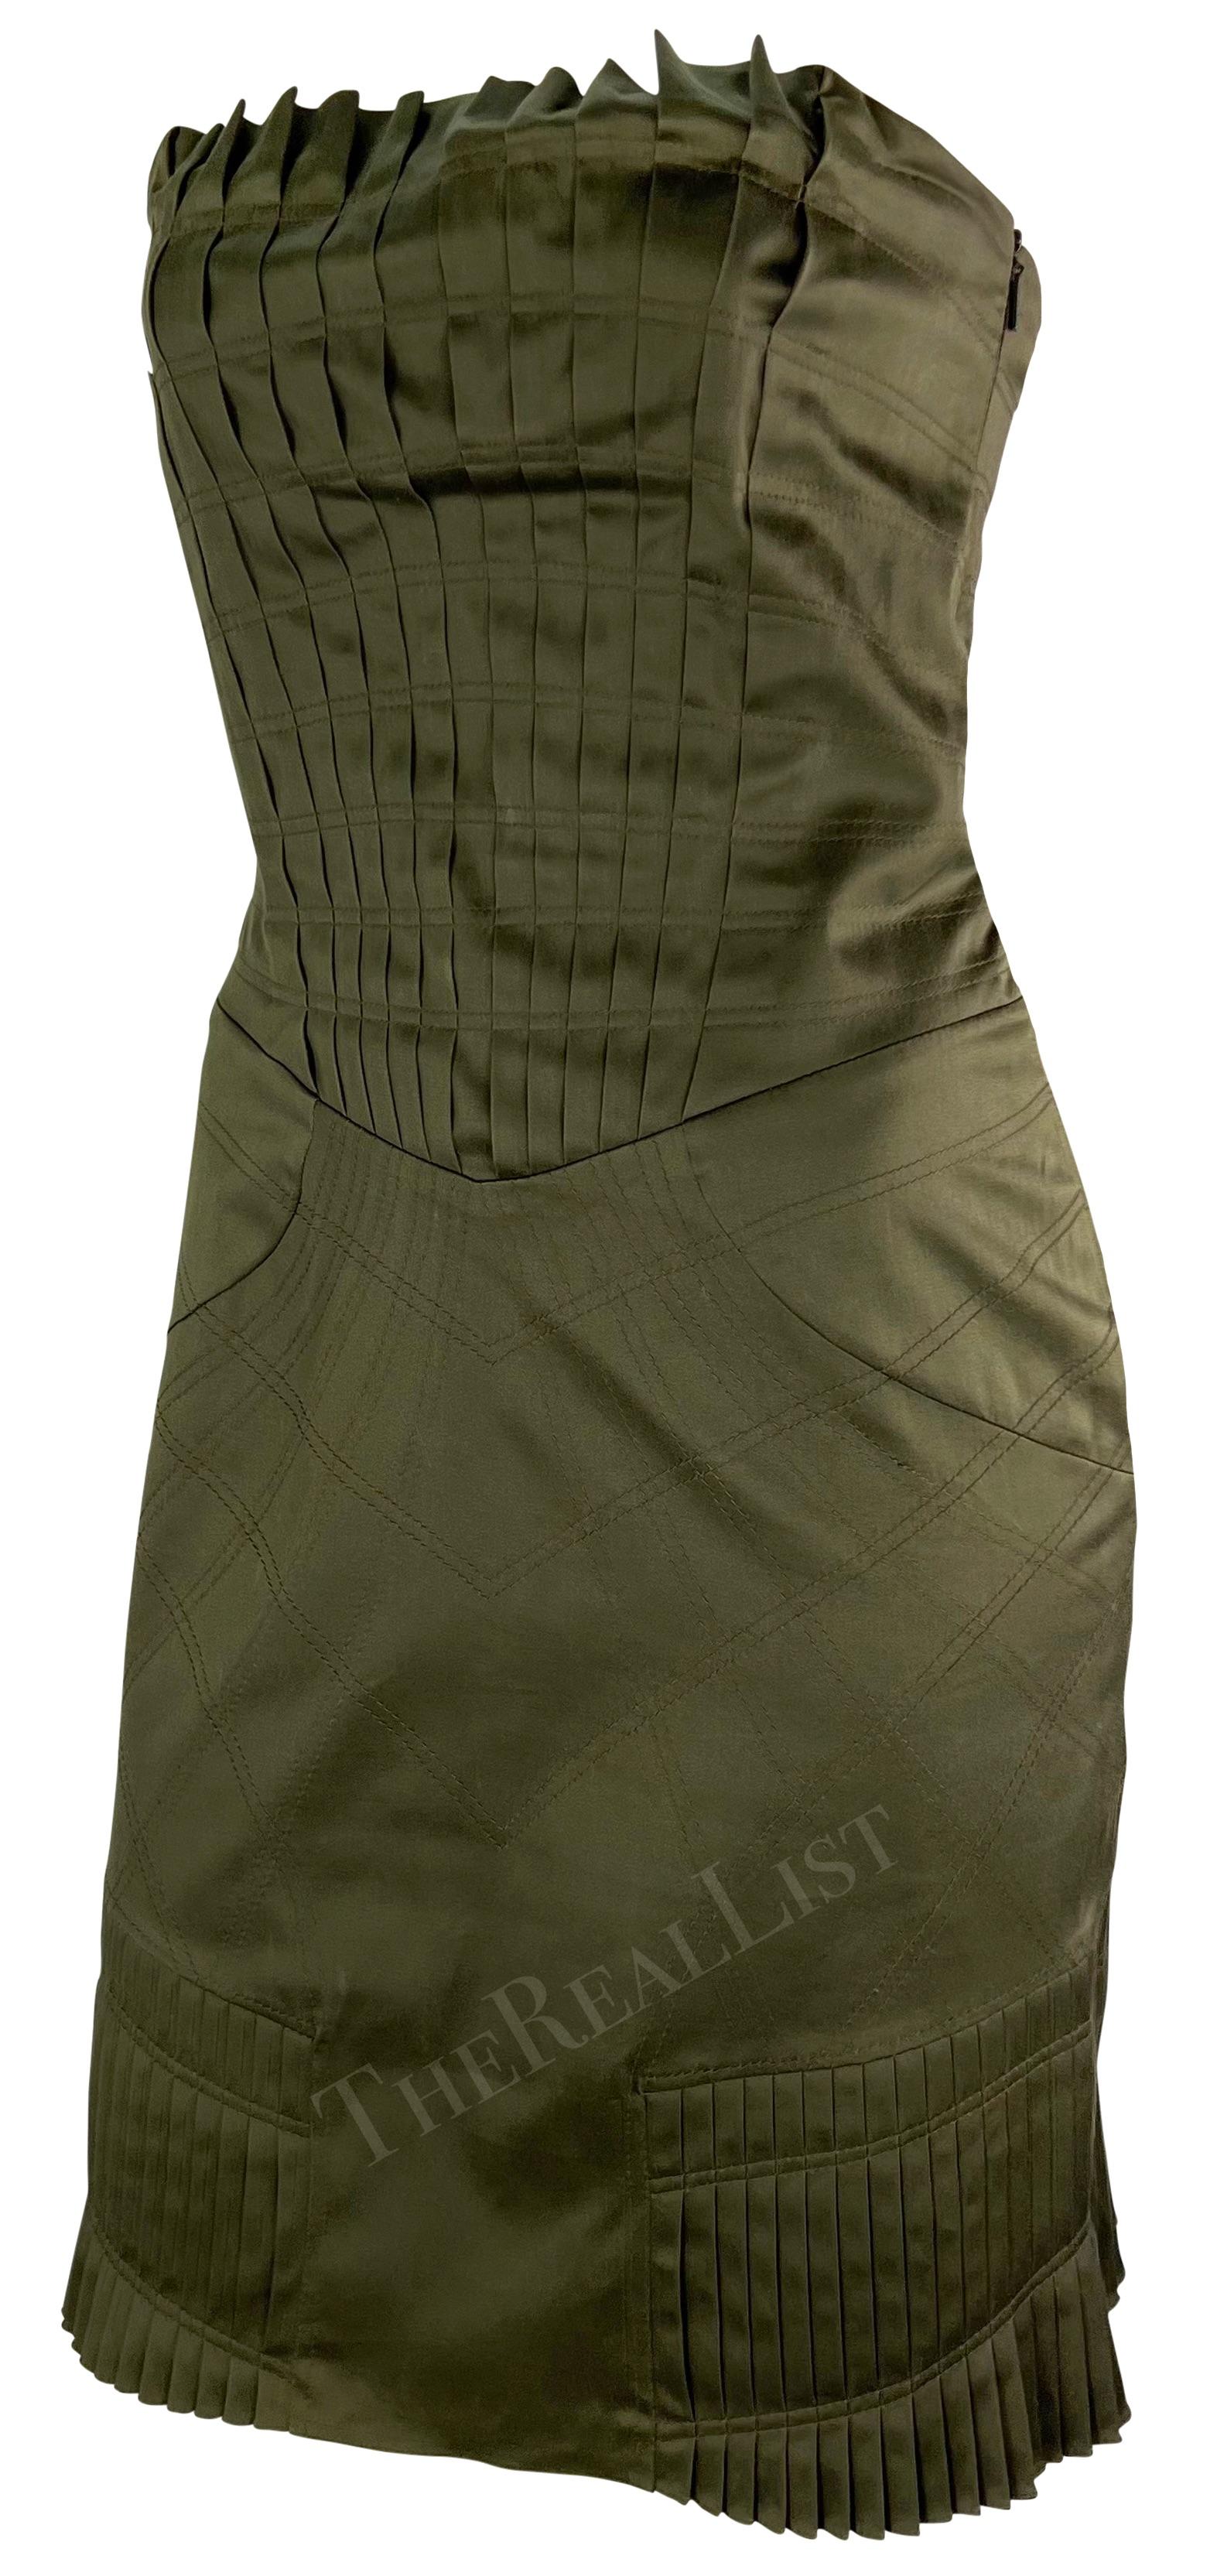 Tom Ford entwarf dieses olivgrüne, plissierte Gucci-Minikleid für die Gucci-Frühjahr/Sommer-Kollektion 2004, seine vorletzte für das Haus. Dieses figurbetonte, trägerlose Kleid mit innenliegendem Korsett ist mit einem Faltenwurf versehen.